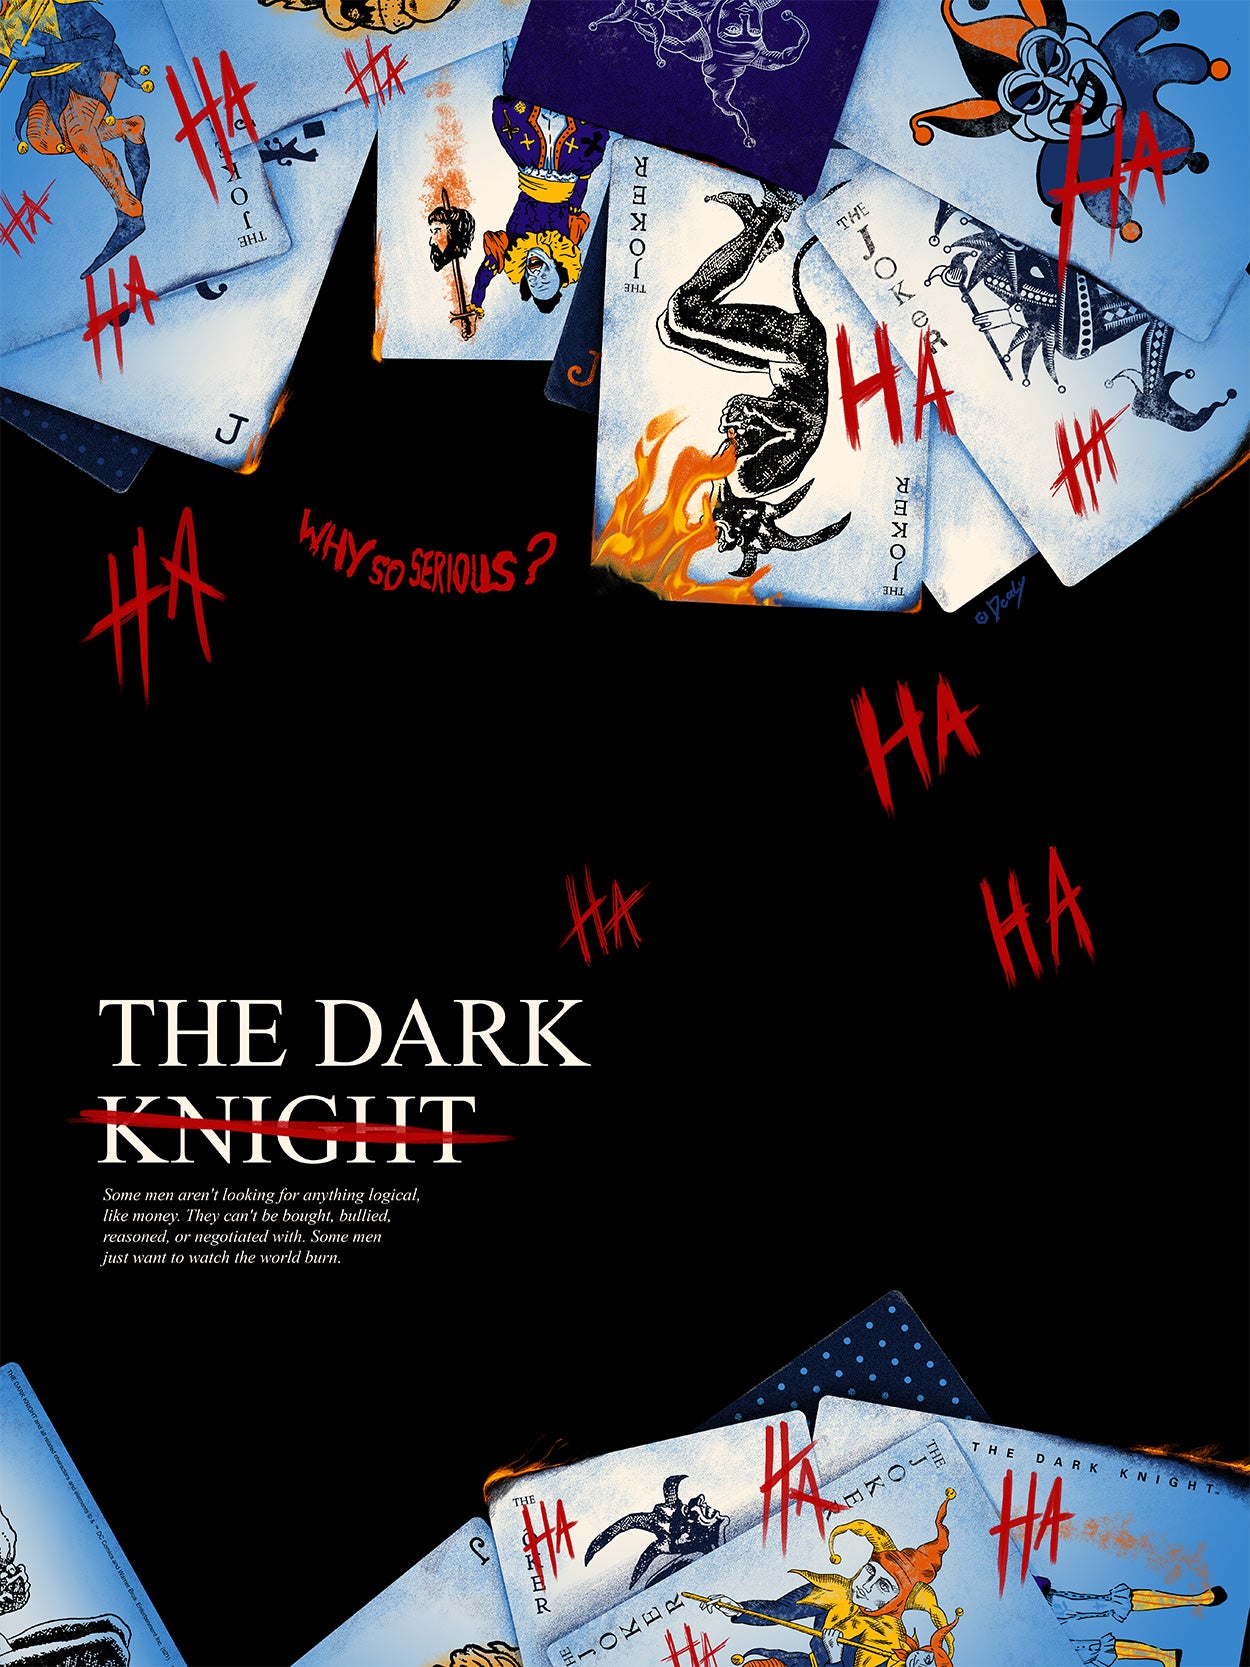 Doaly "The Dark Knight" Variant